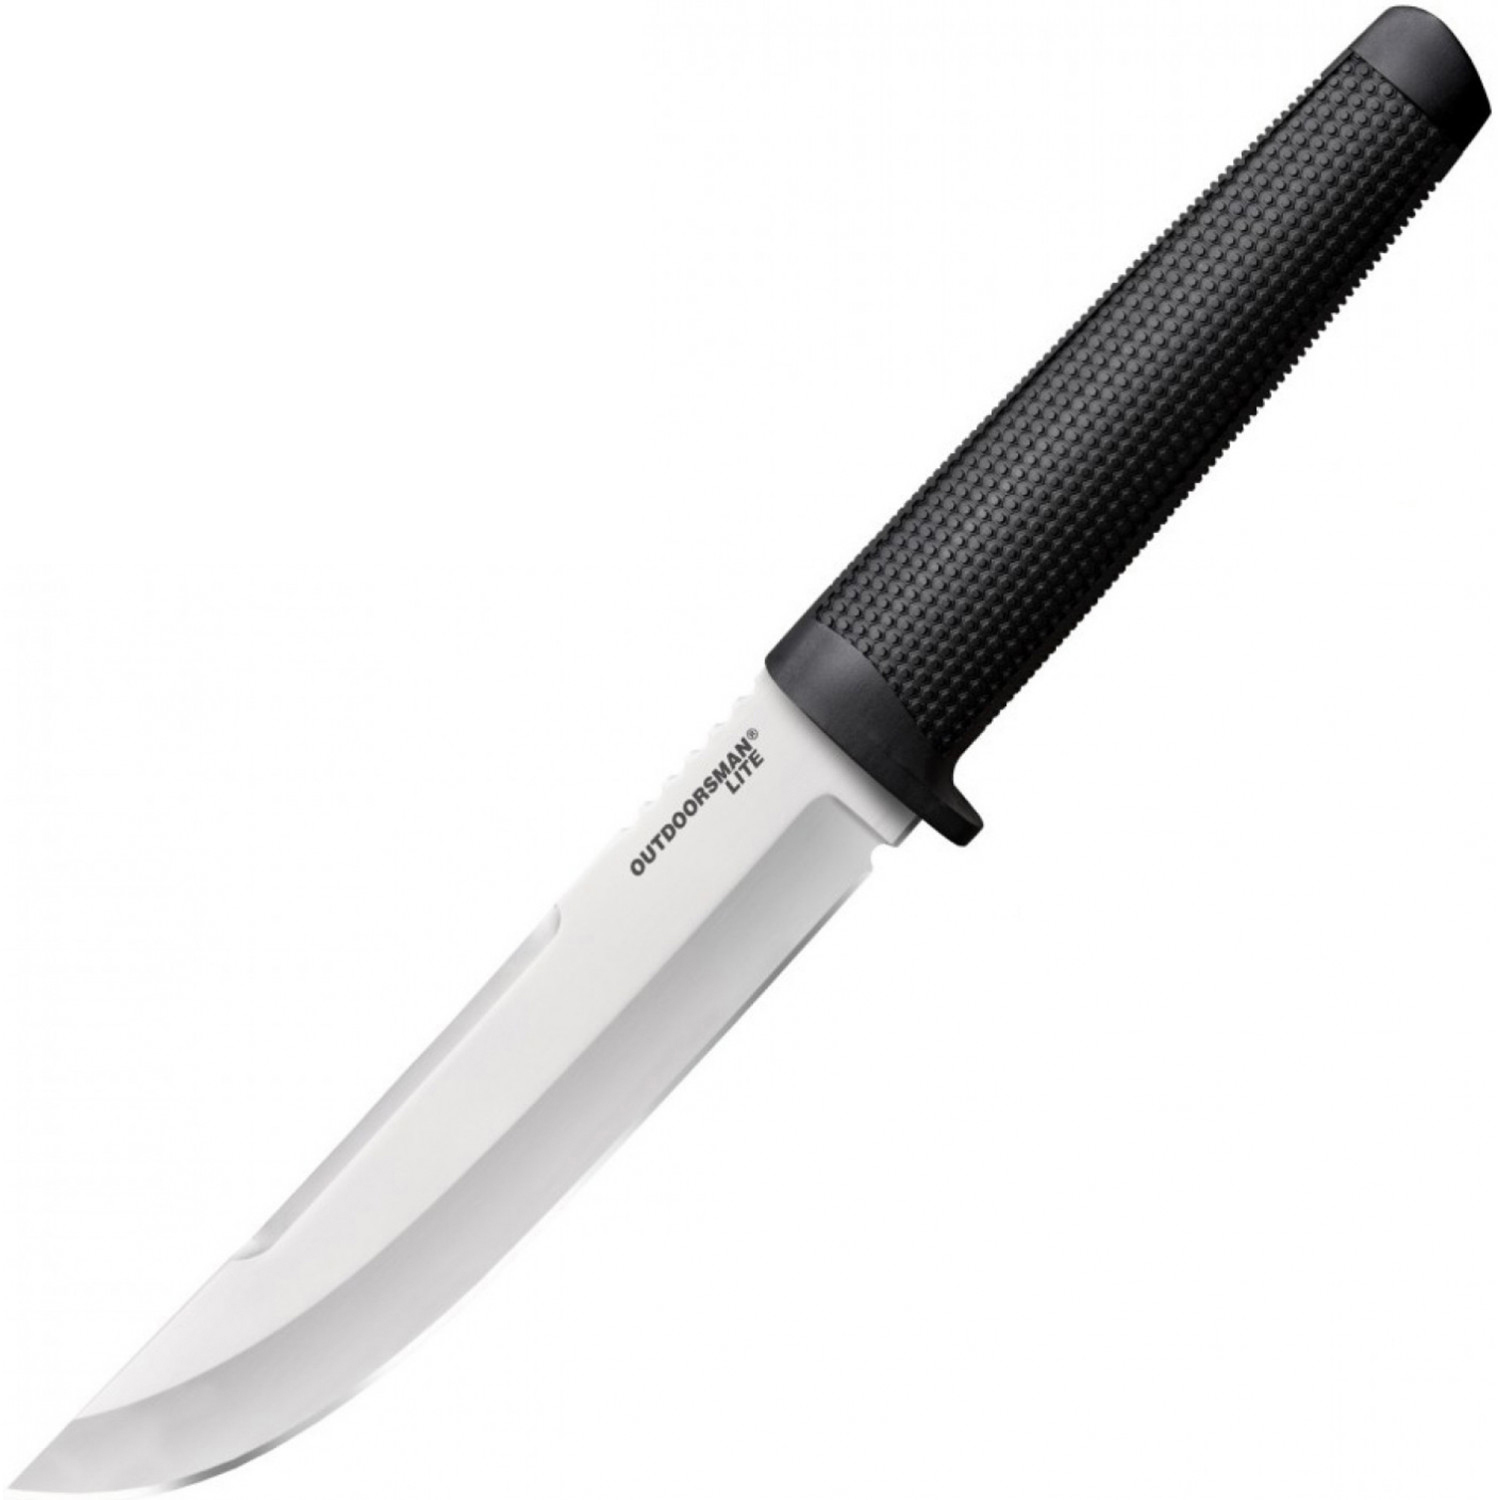 Нож с фиксированным клинком Cold Steel Outdoorsman Lite, сталь 1.4116, рукоять полипропилен, black нож cold steel finn bear 20pc сталь 4116 рукоять полипропилен